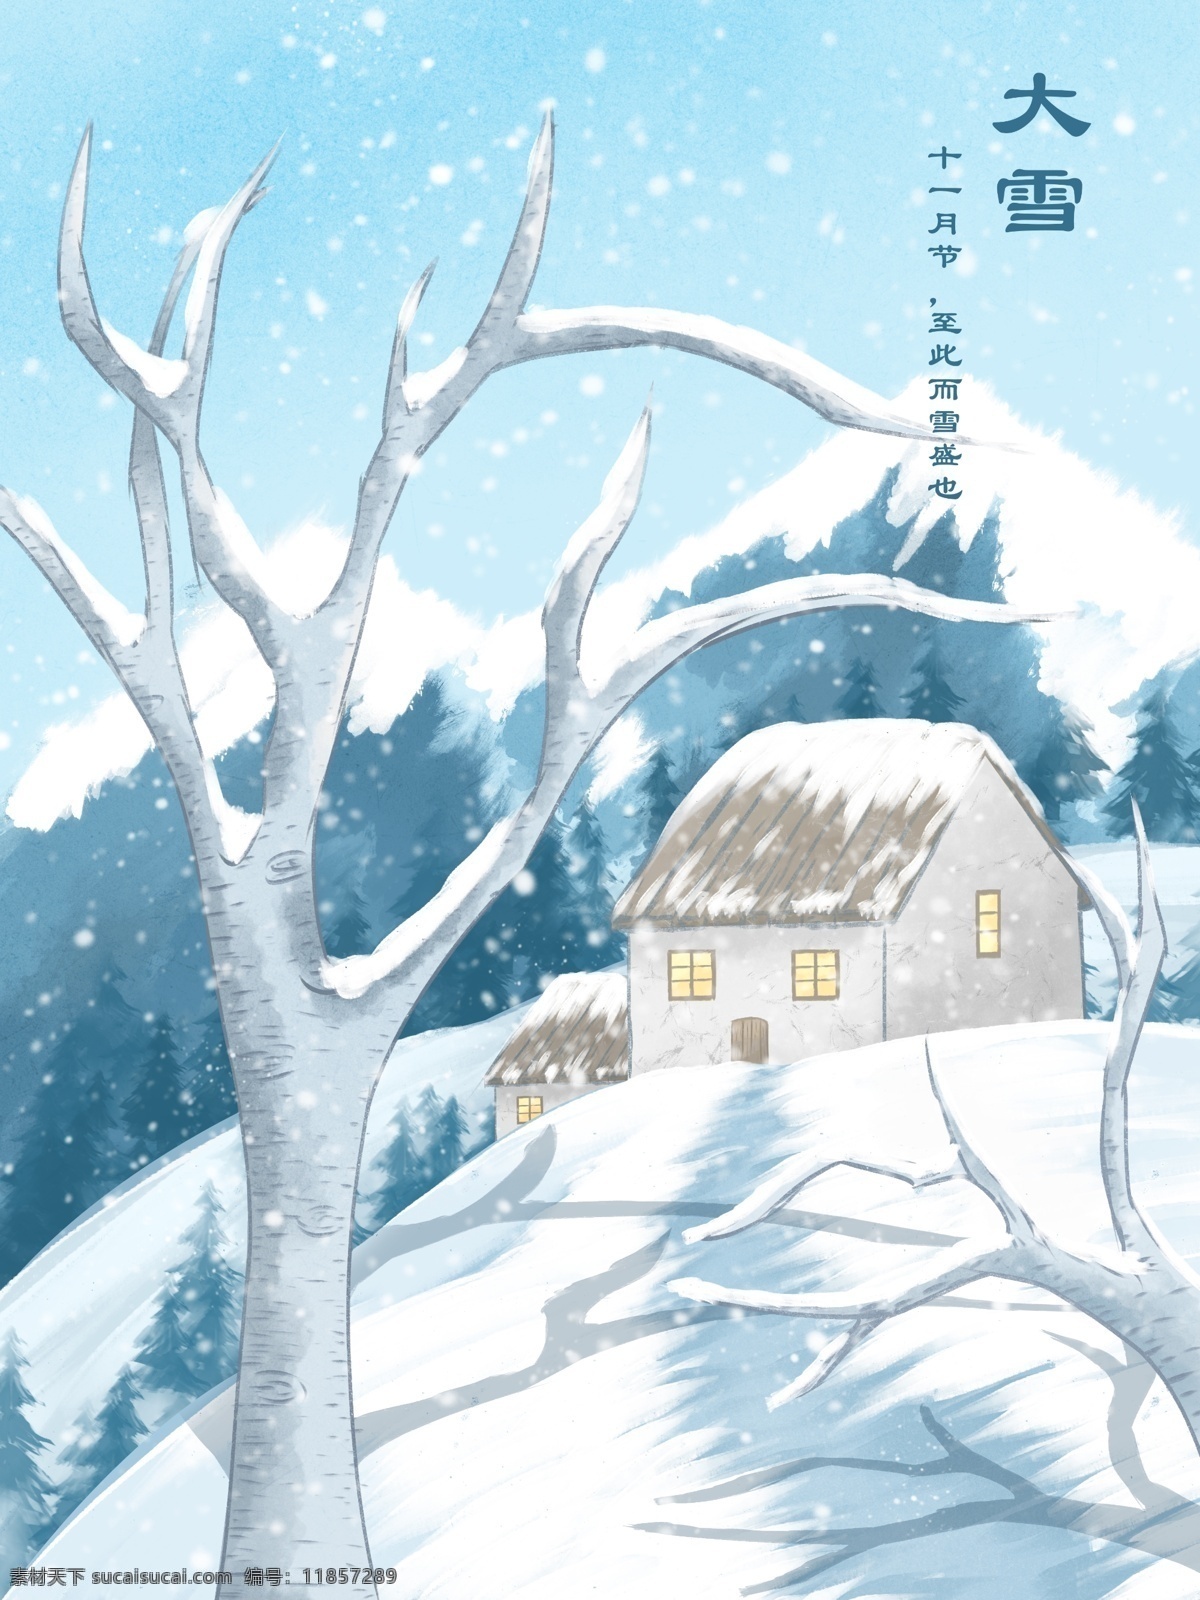 大雪 水彩 插画 大雪山 林 中小 木屋 冬天 雪景 雪地 清新 壁纸 山林 松林 树 积雪 冷色 背景